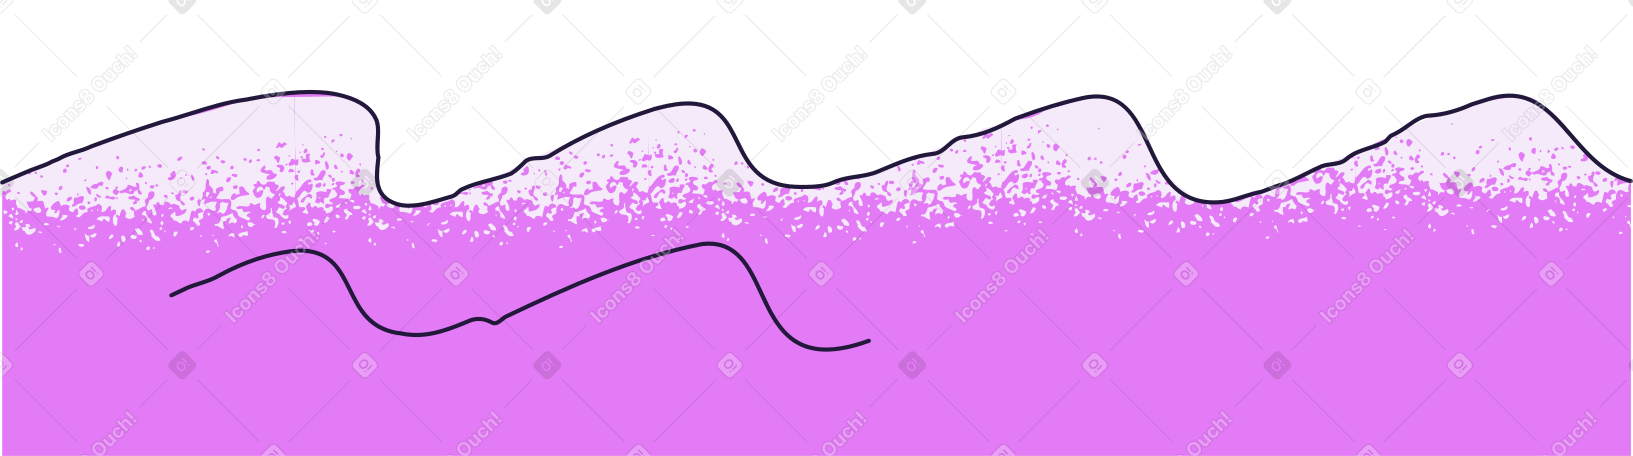 sea Illustration in PNG, SVG